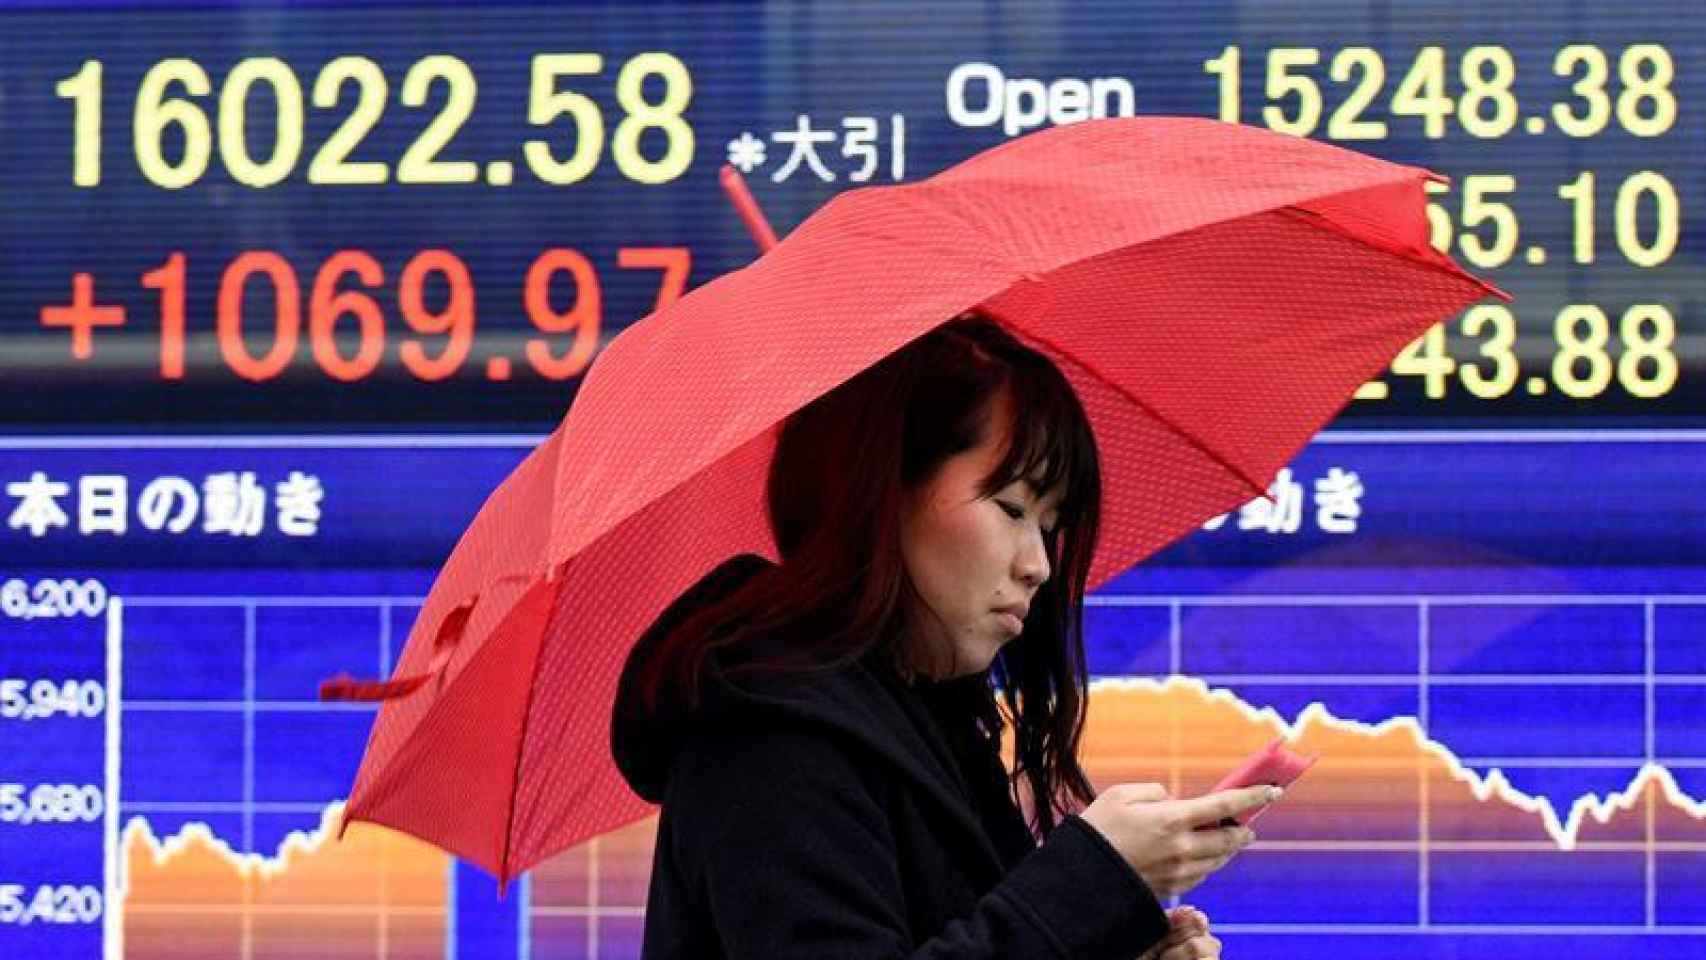 Indicadores en la Bolsa de Tokio